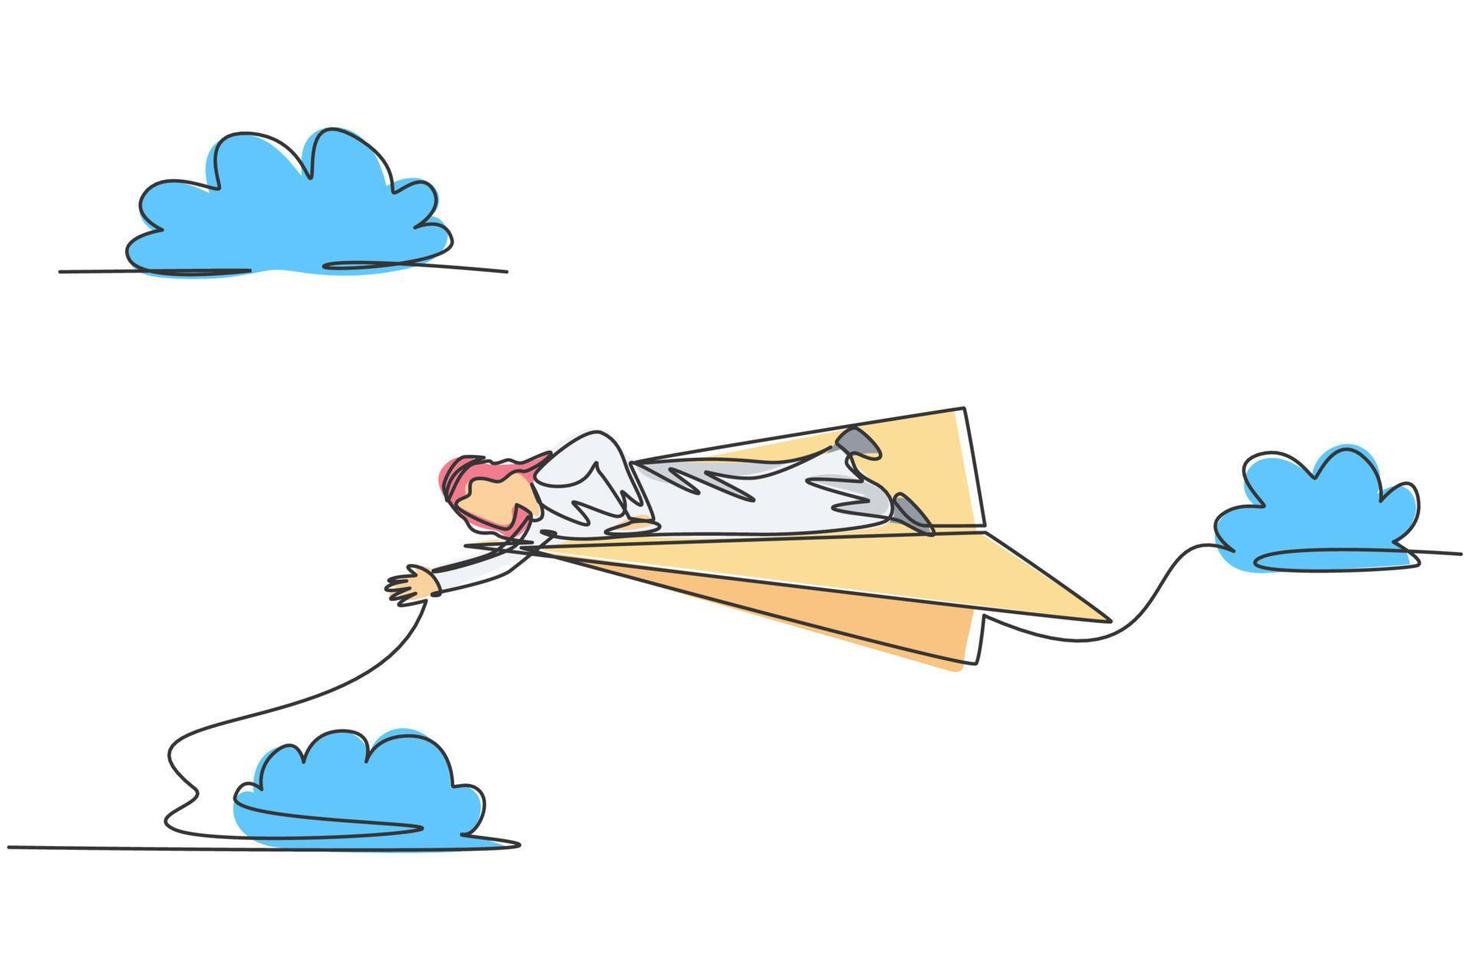 Un solo dibujo de línea continua de un joven empresario árabe tendido en un avión de papel volador para llegar a sus colegas de otoño. concepto de metáfora del minimalismo. Ilustración de vector de diseño gráfico de dibujo de una línea